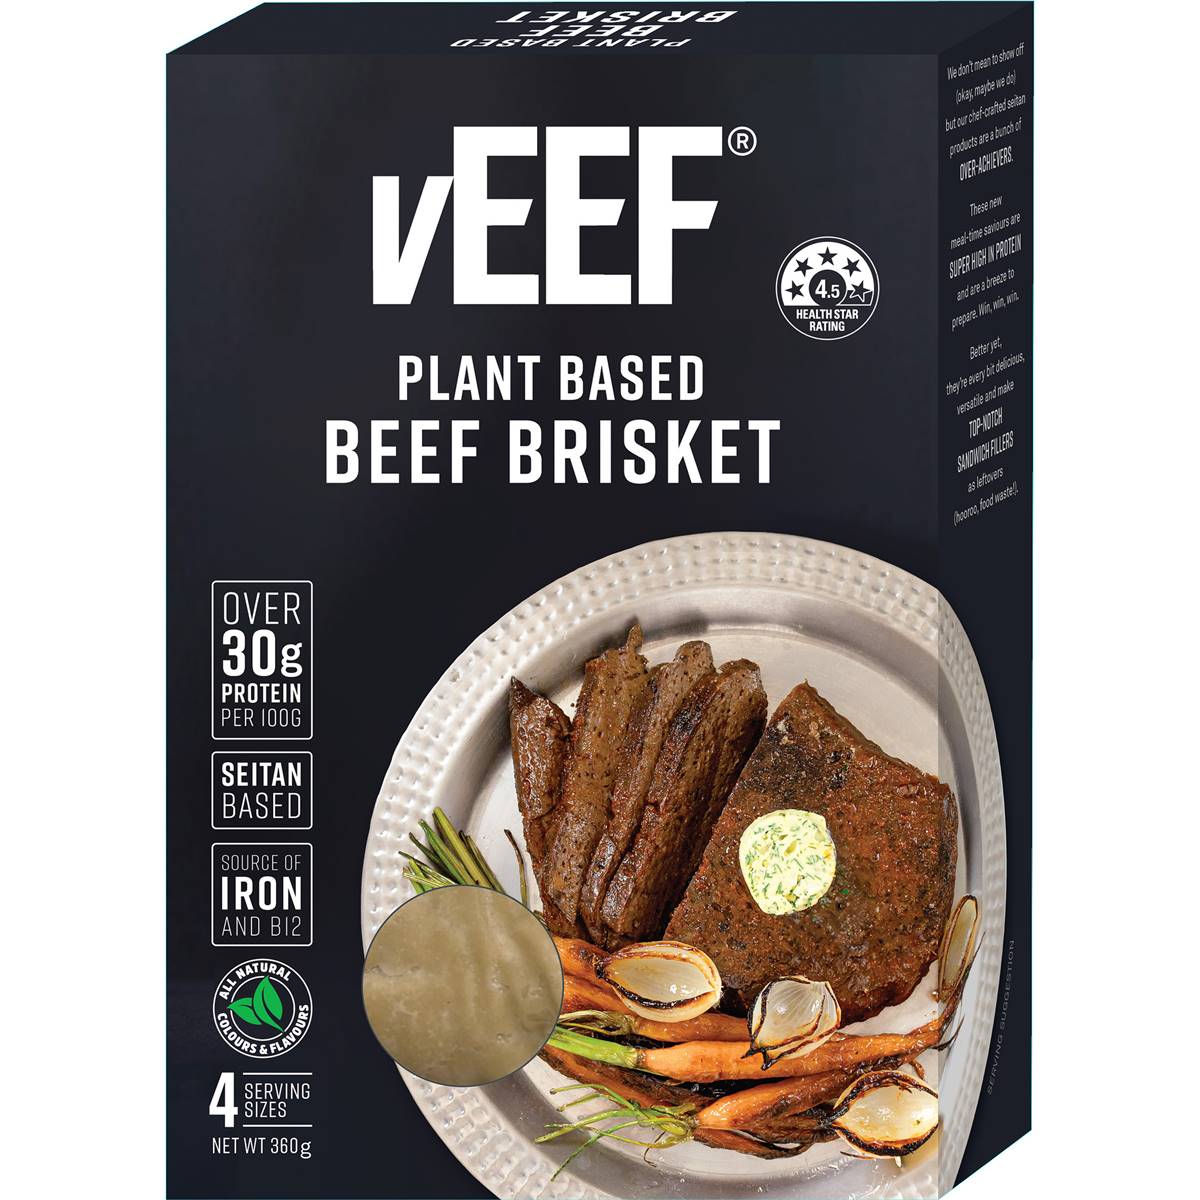 Calories in Veef Plant Based Beef Brisket